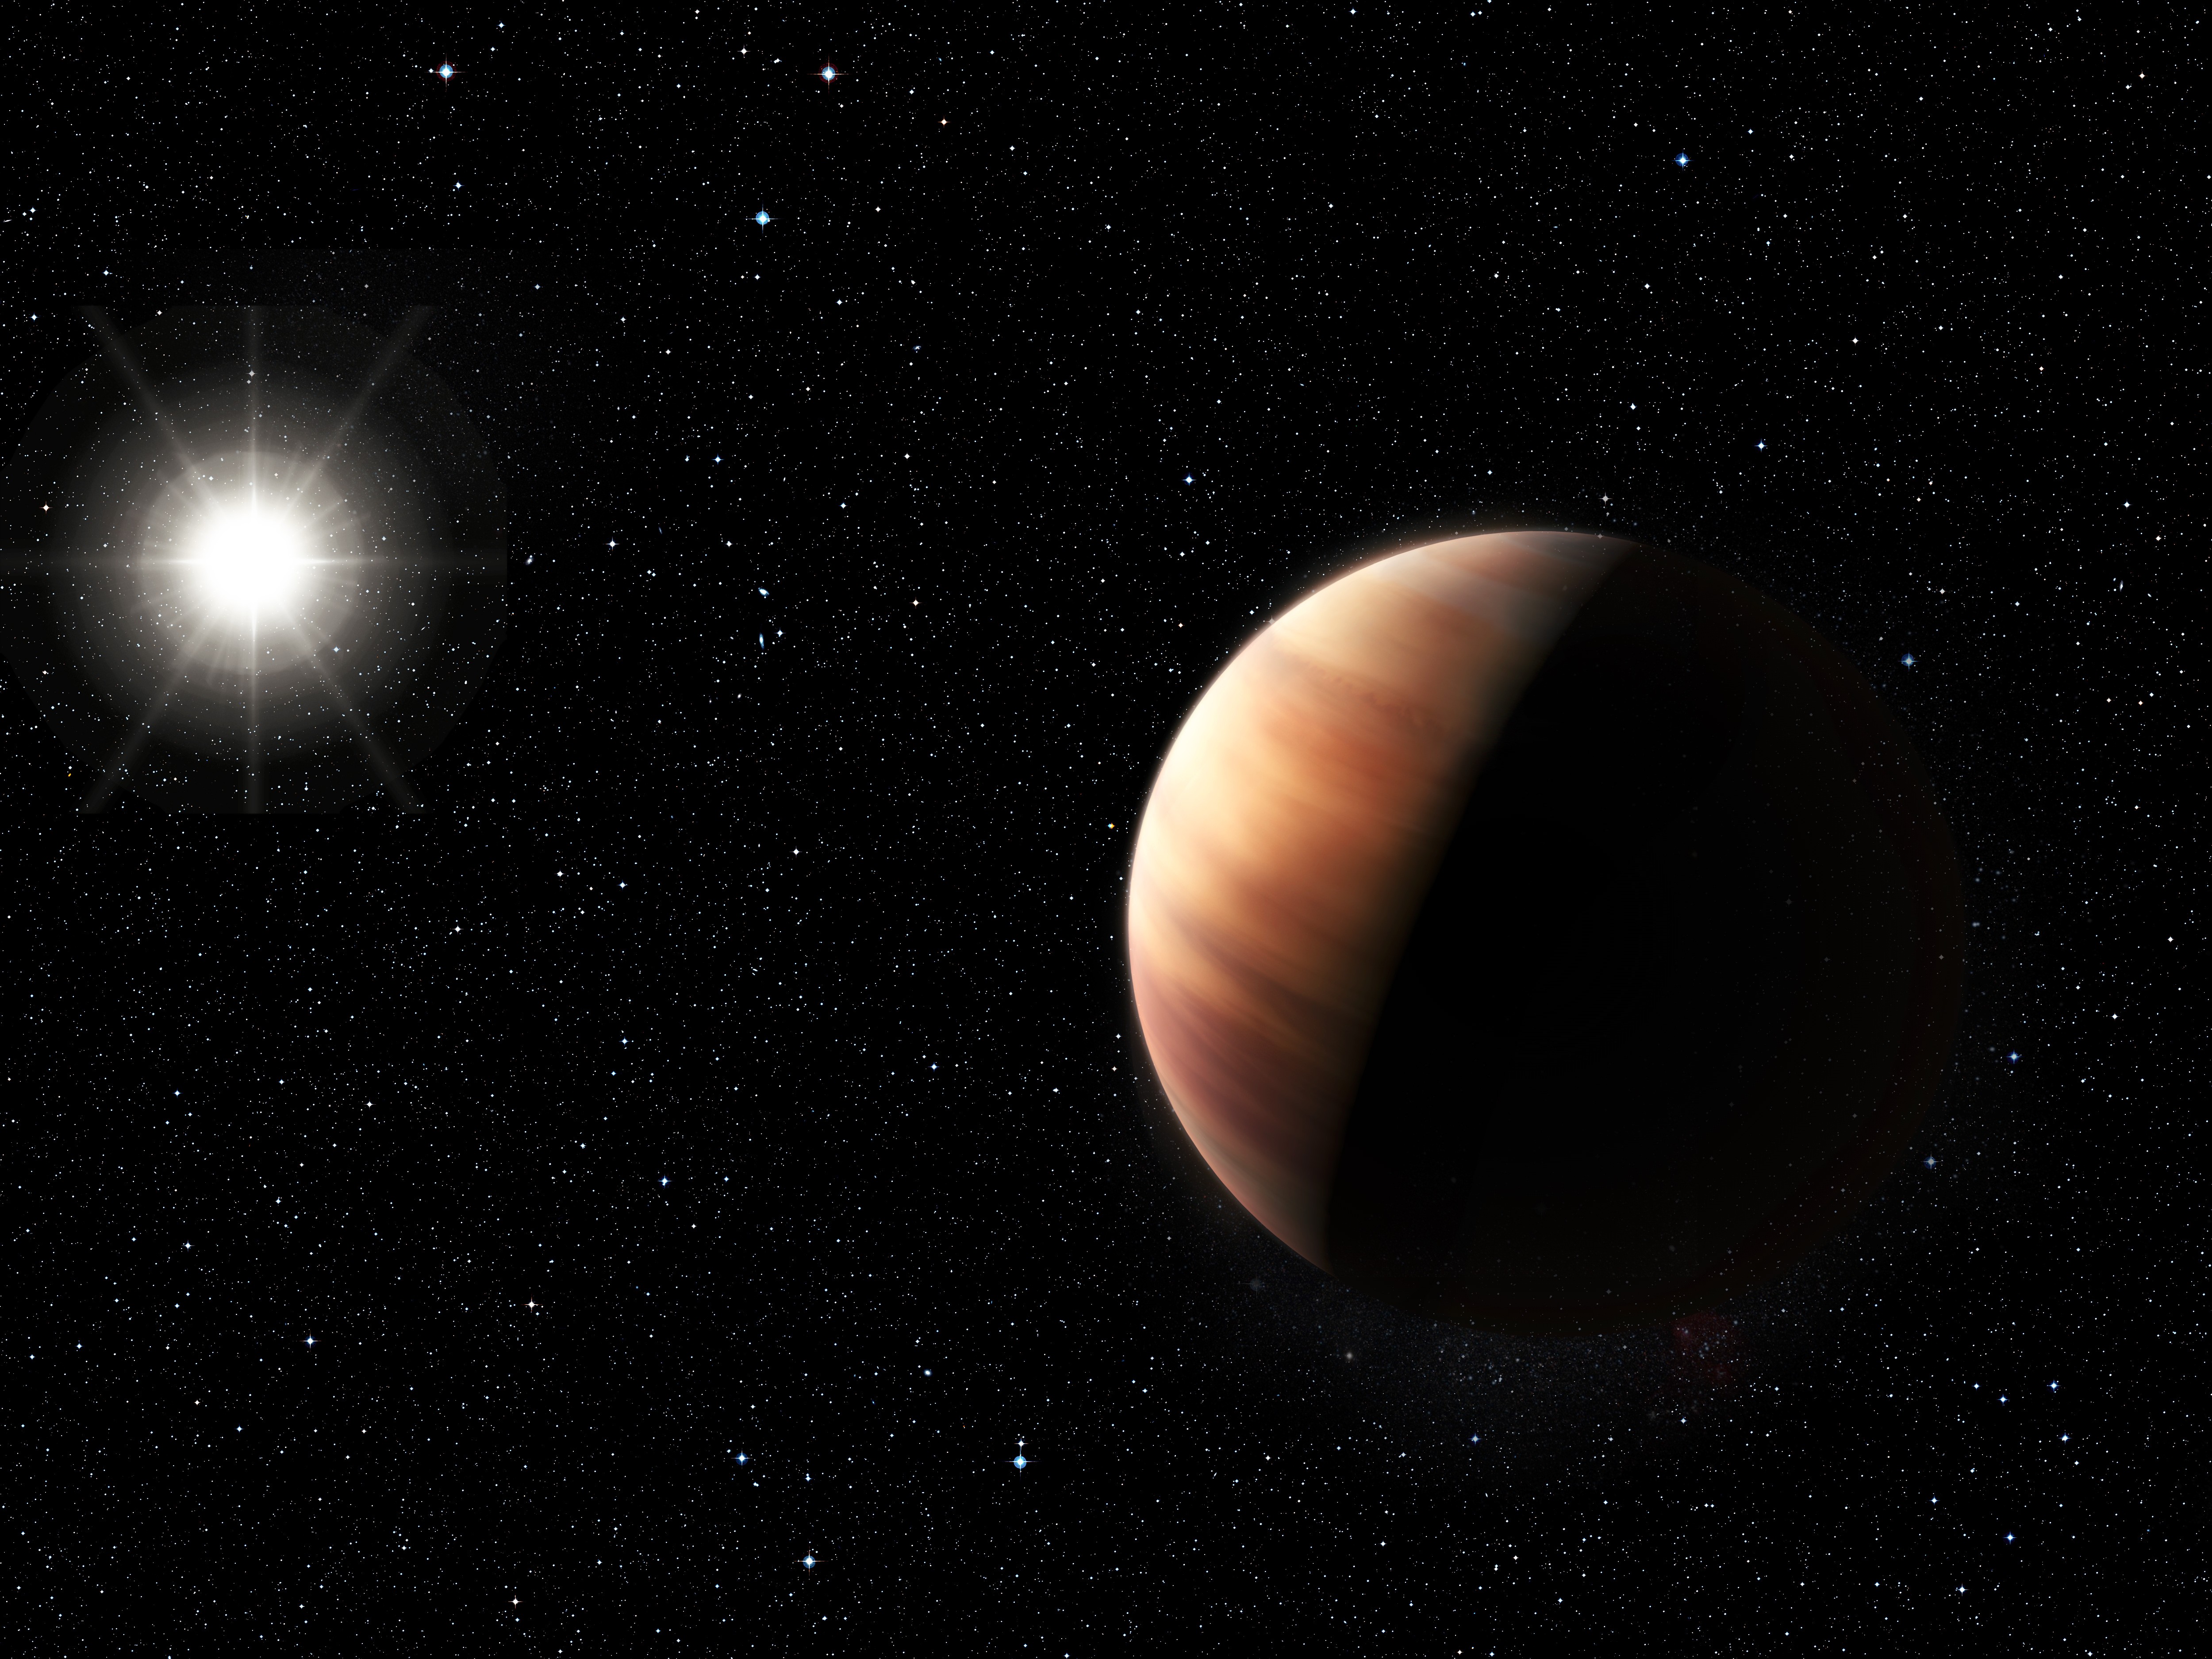 Concepção artística retrata gêmeo de Júpiter orbitando a estrela HIP 11915, uma gêmea solar (Foto: ESO | M. Kornmesser | Divulgação)